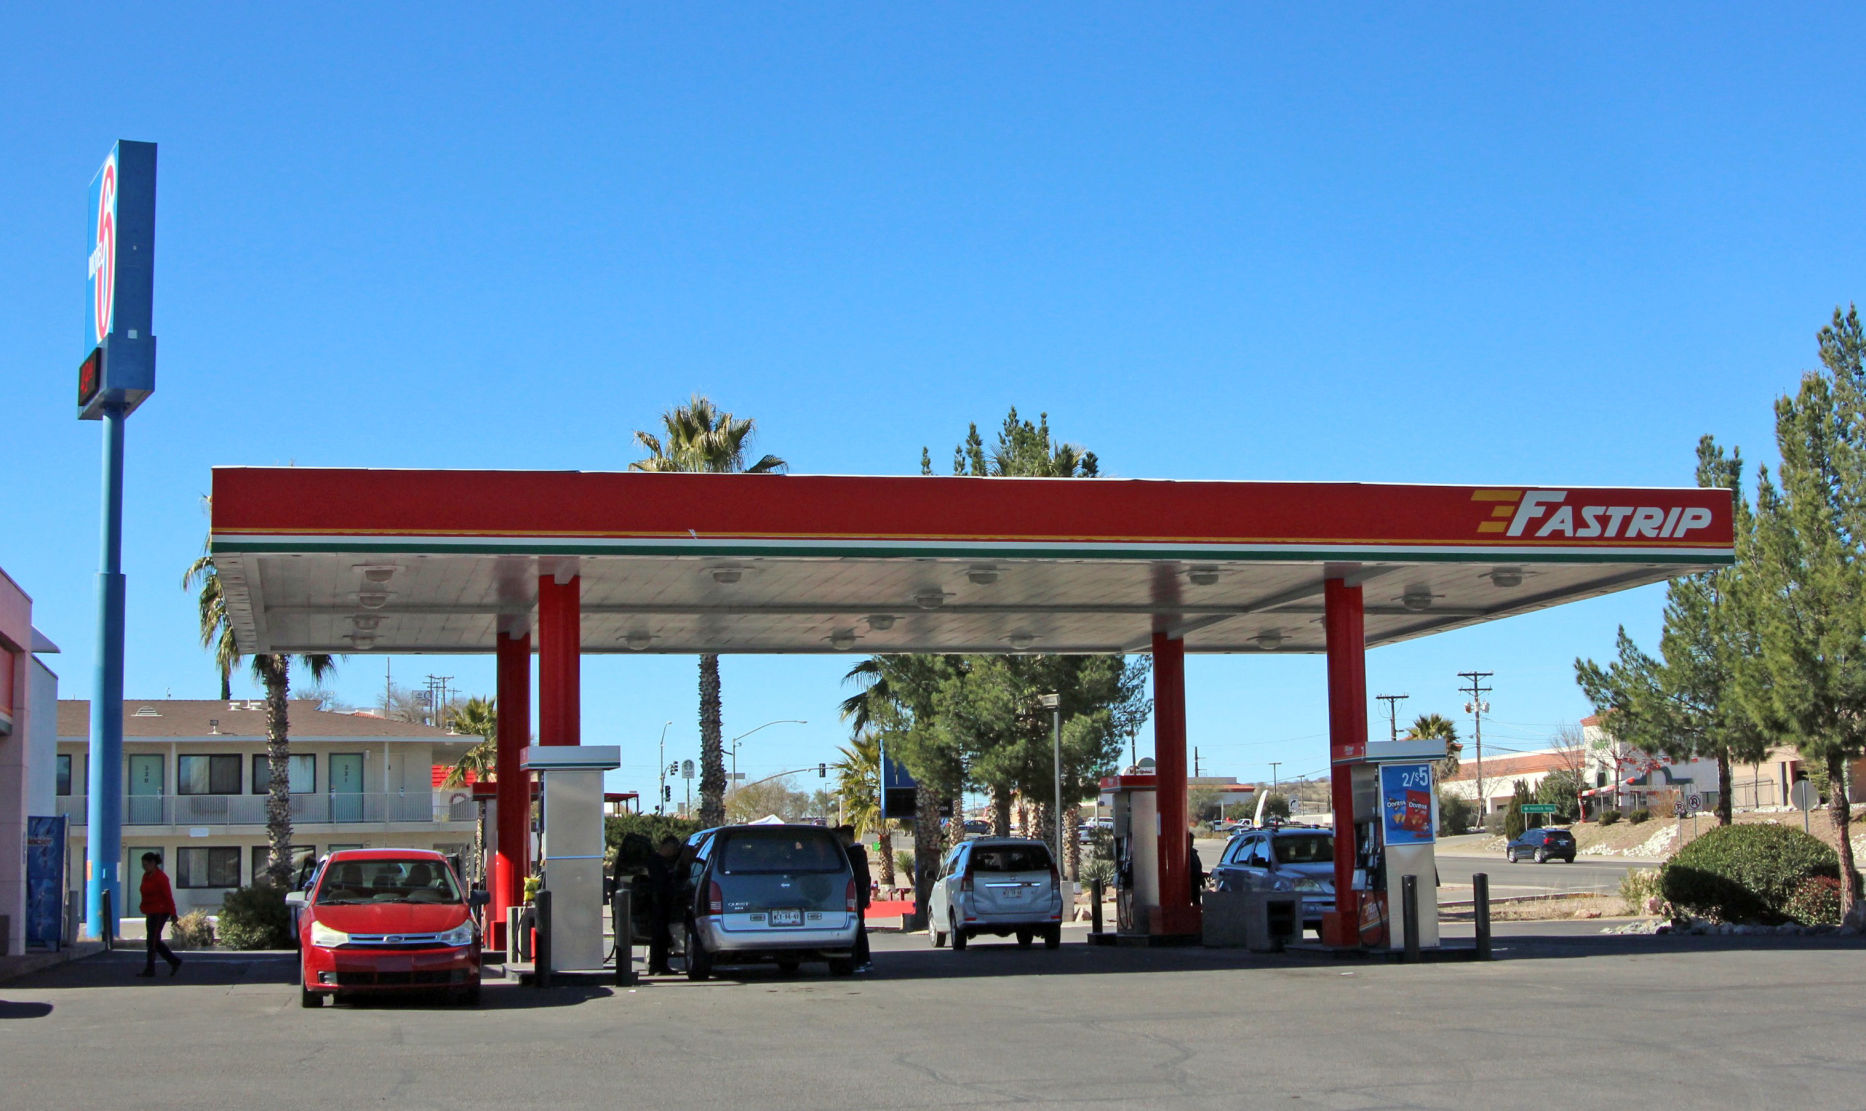 Venta de gasolina perjudicada por restricciones de viajes transfronterizos